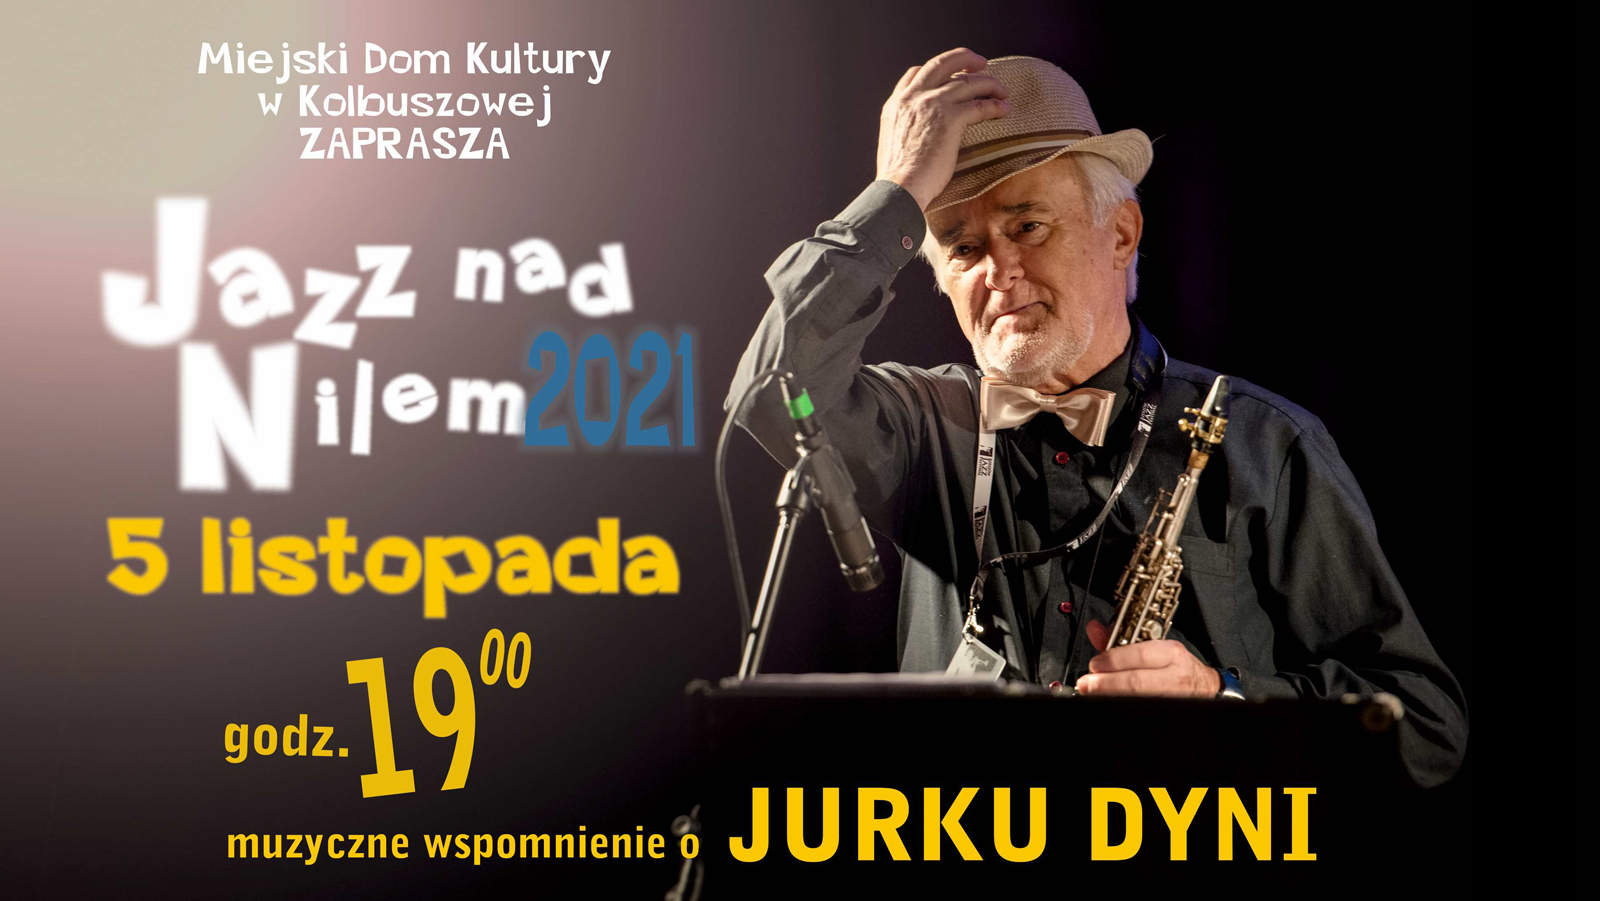 Jazz nad Nilem 2021 - "Muzyczne wspomnienie o Jerzym Dyni" - Kolbuszowa 2021 - Zdjęcie główne